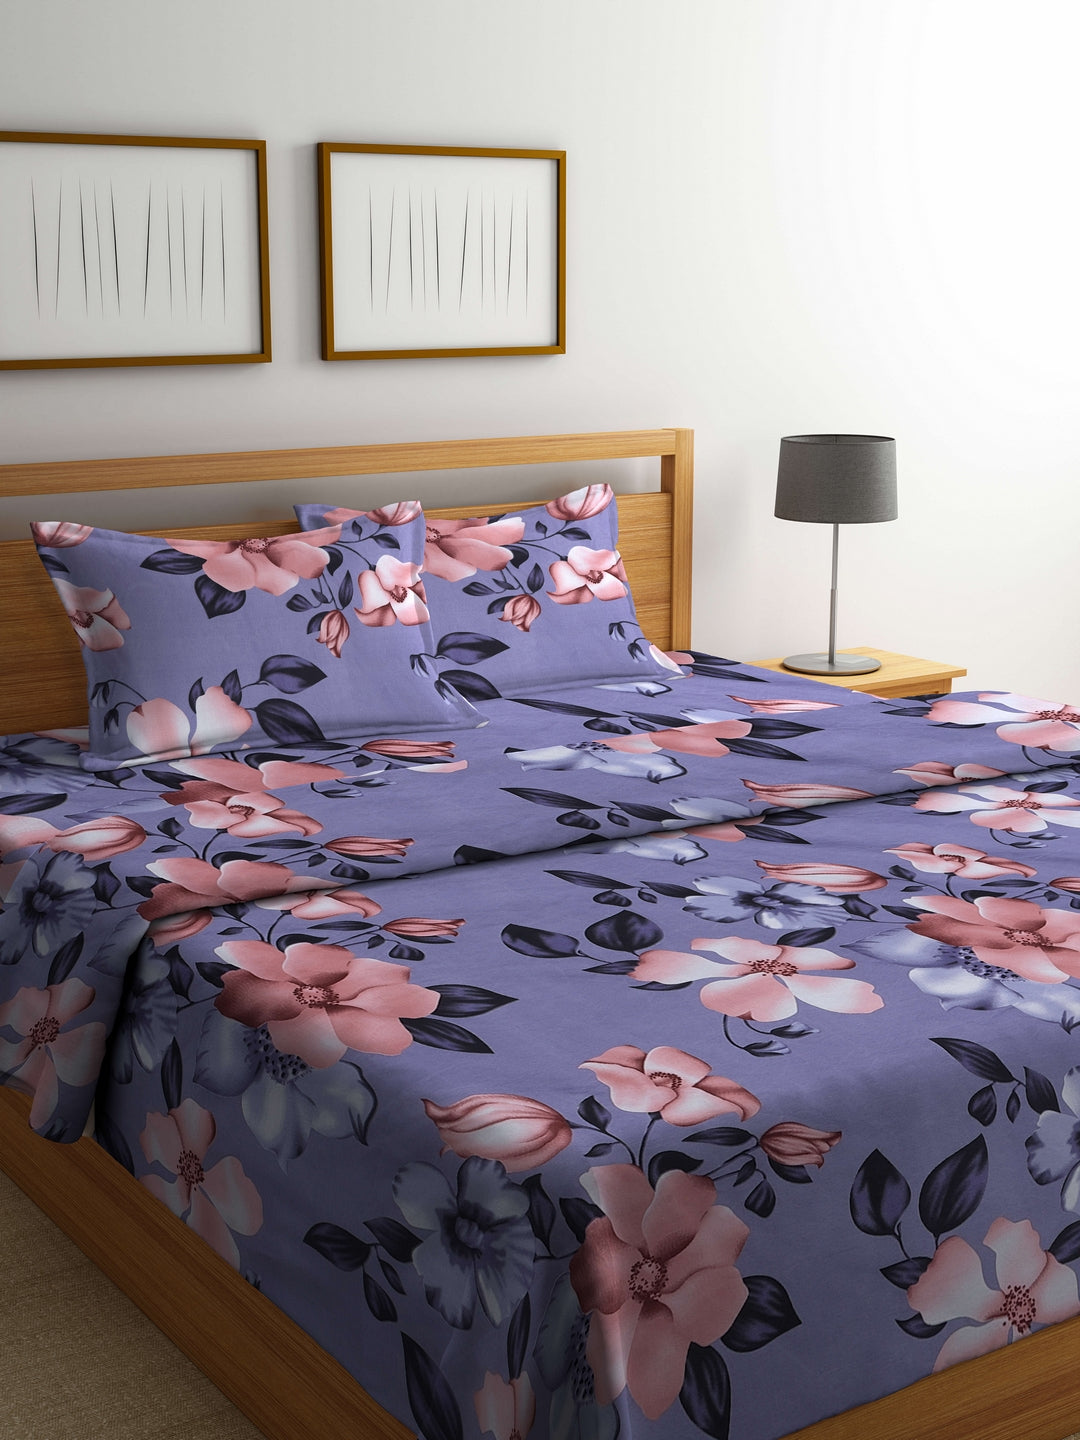 Arrabi Purple Floral TC Cotton Blend Double Size Comforter Bedding Set with 2 Pillow Cover